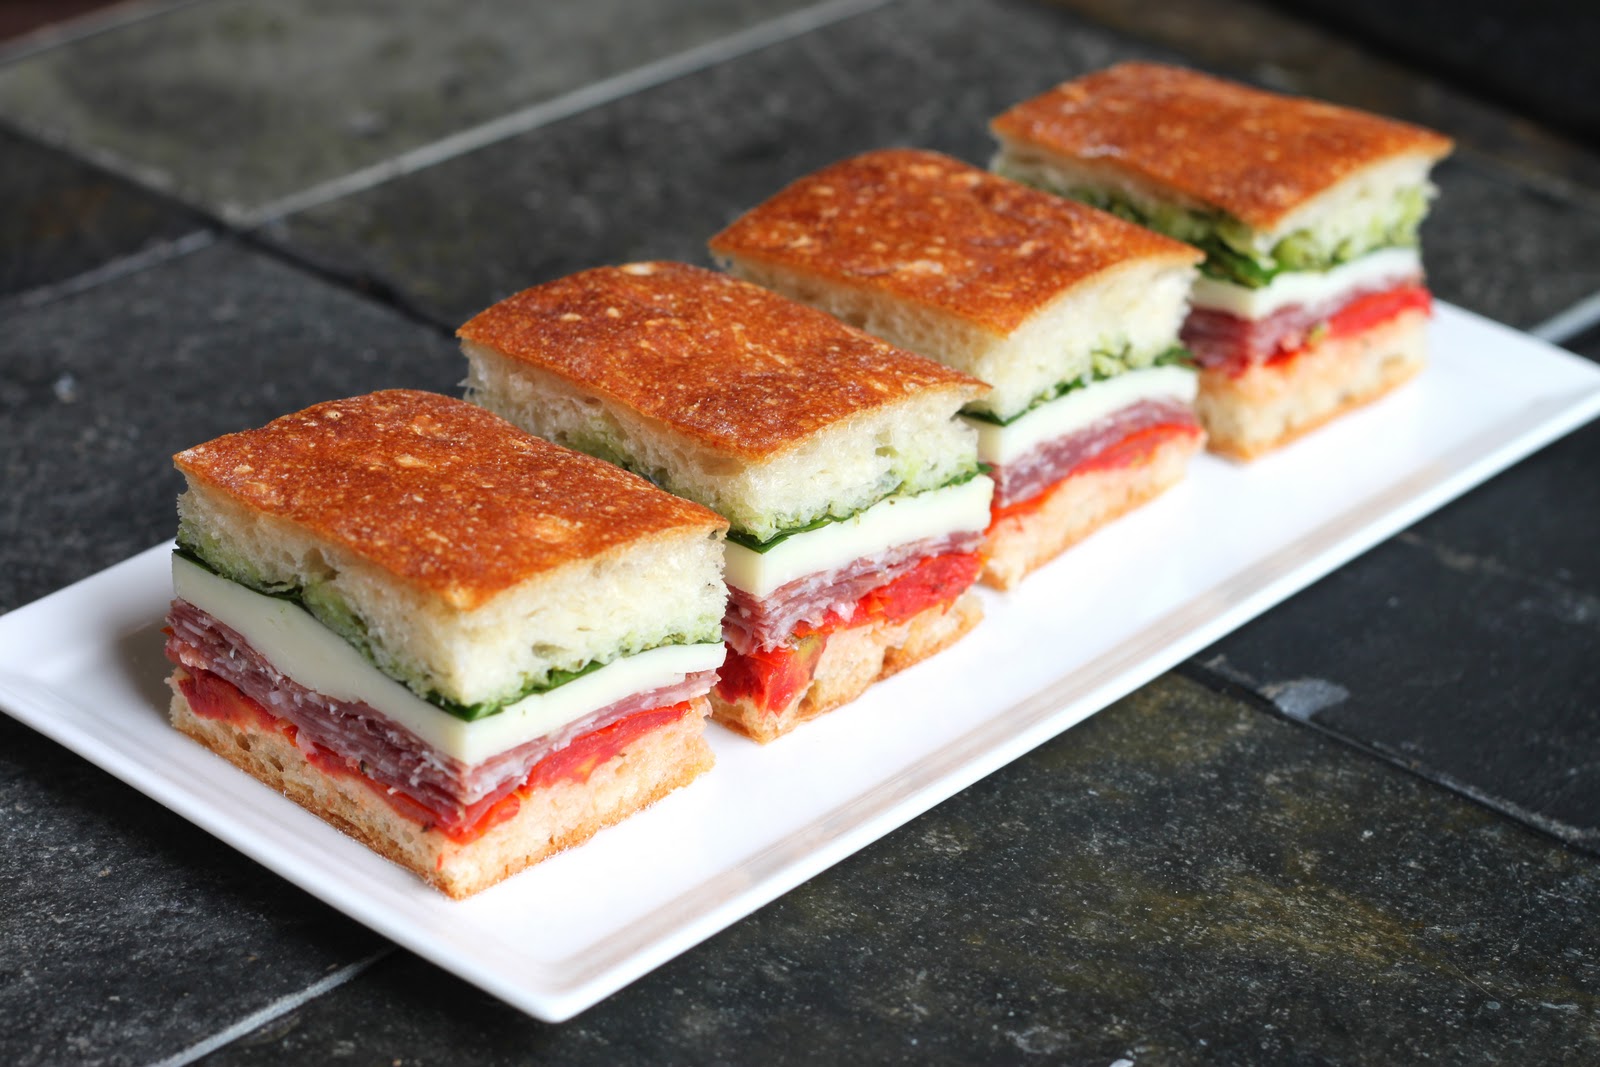 The Cilantropist A Presidio Picnic With Italian Pressed Sandwiches